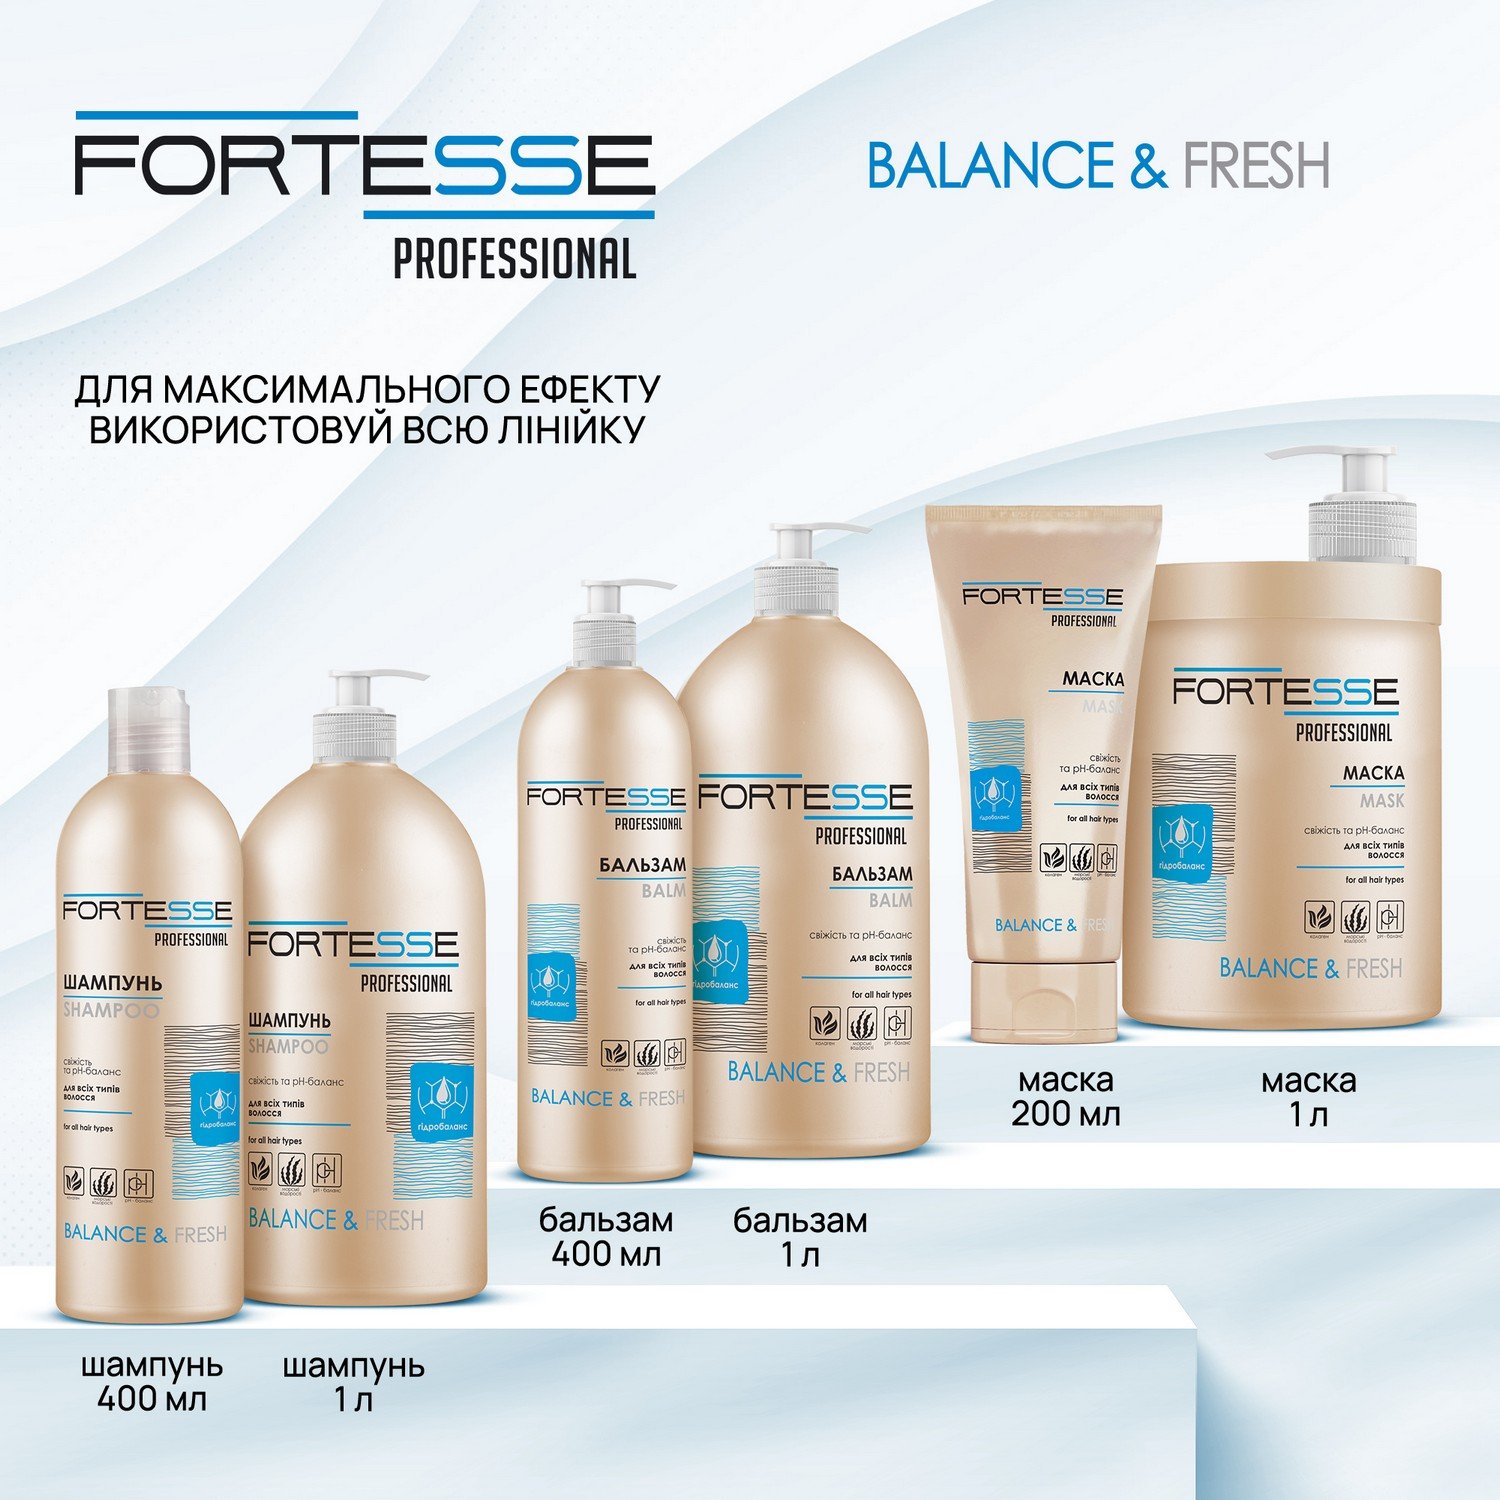 Шампунь Fortesse Professional Balance & Fresh, для всех типов волос, 400 мл - фото 6